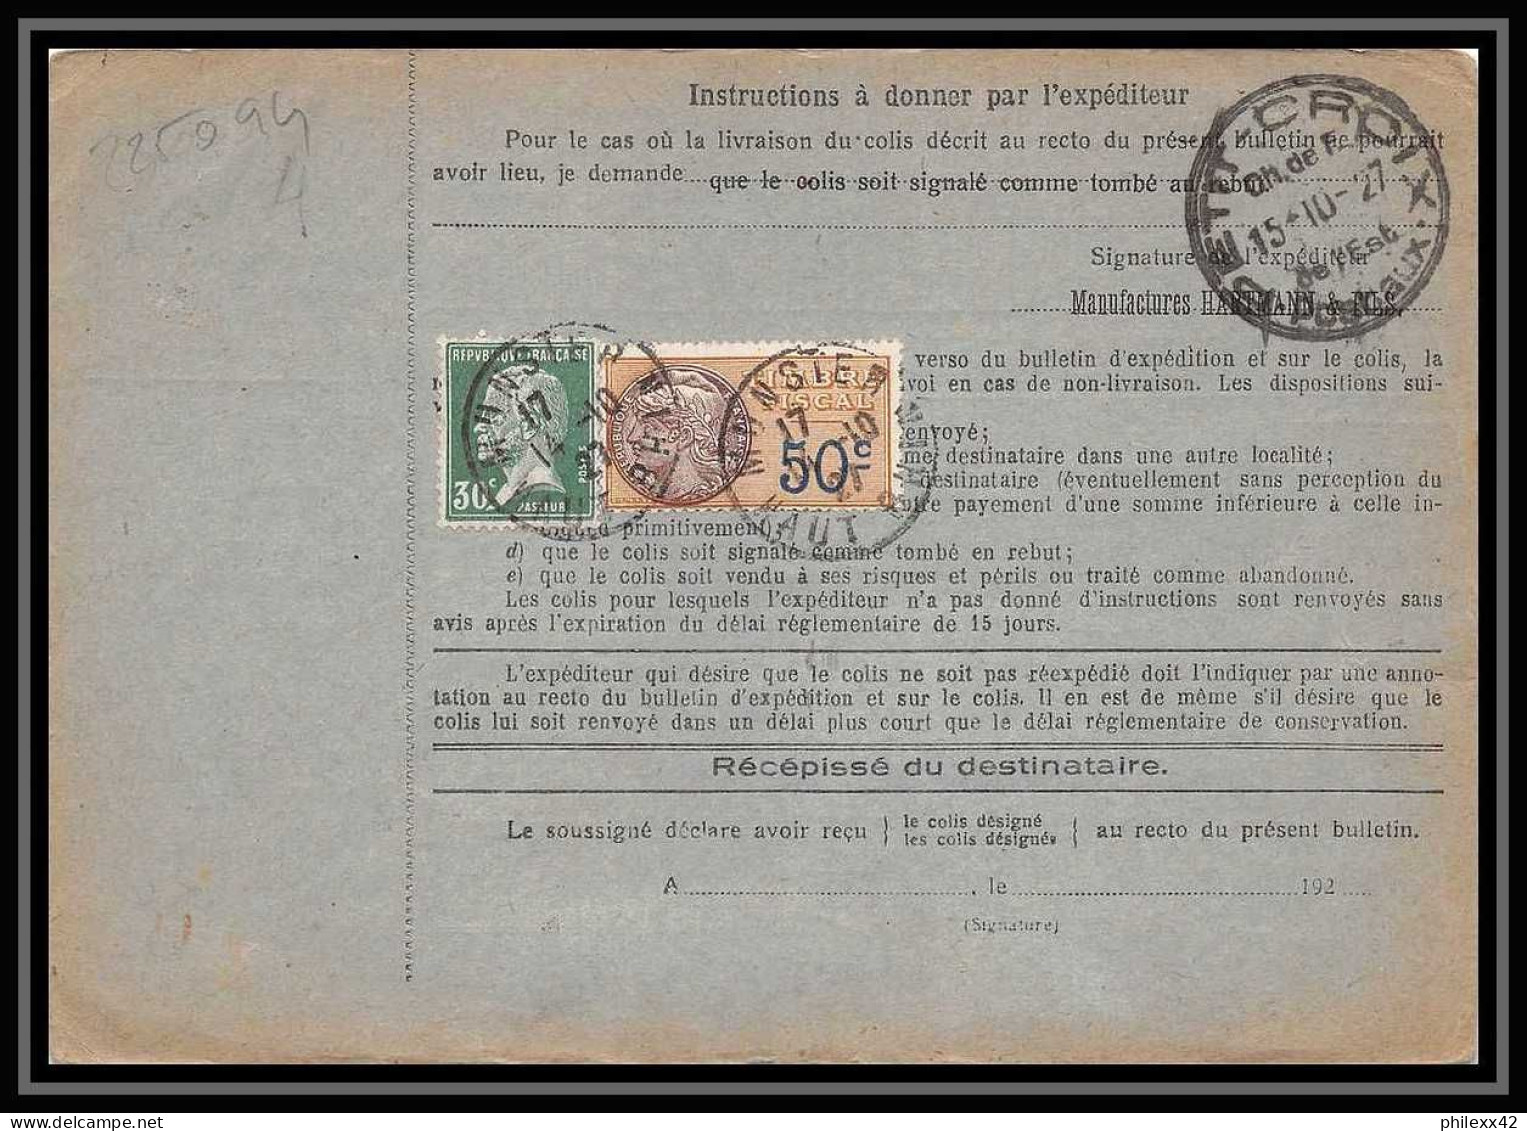 25094 Bulletin D'expédition France Colis Postaux Fiscal Haut Rhin - 1927 Munster Semeuse + Merson 123 Valeur Déclarée - Briefe U. Dokumente